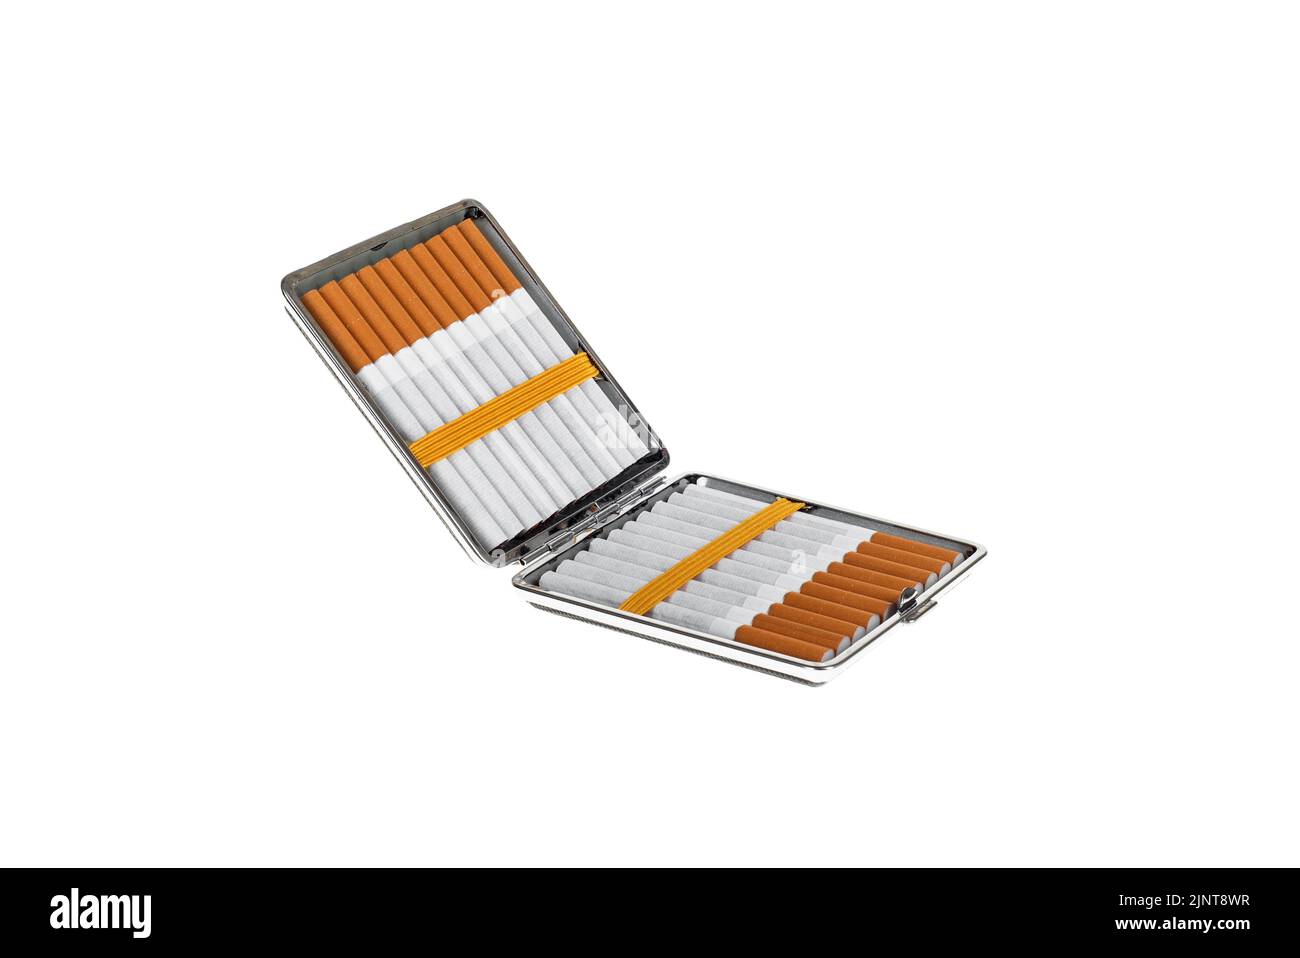 ProSmoke Electronic Cigarette Case